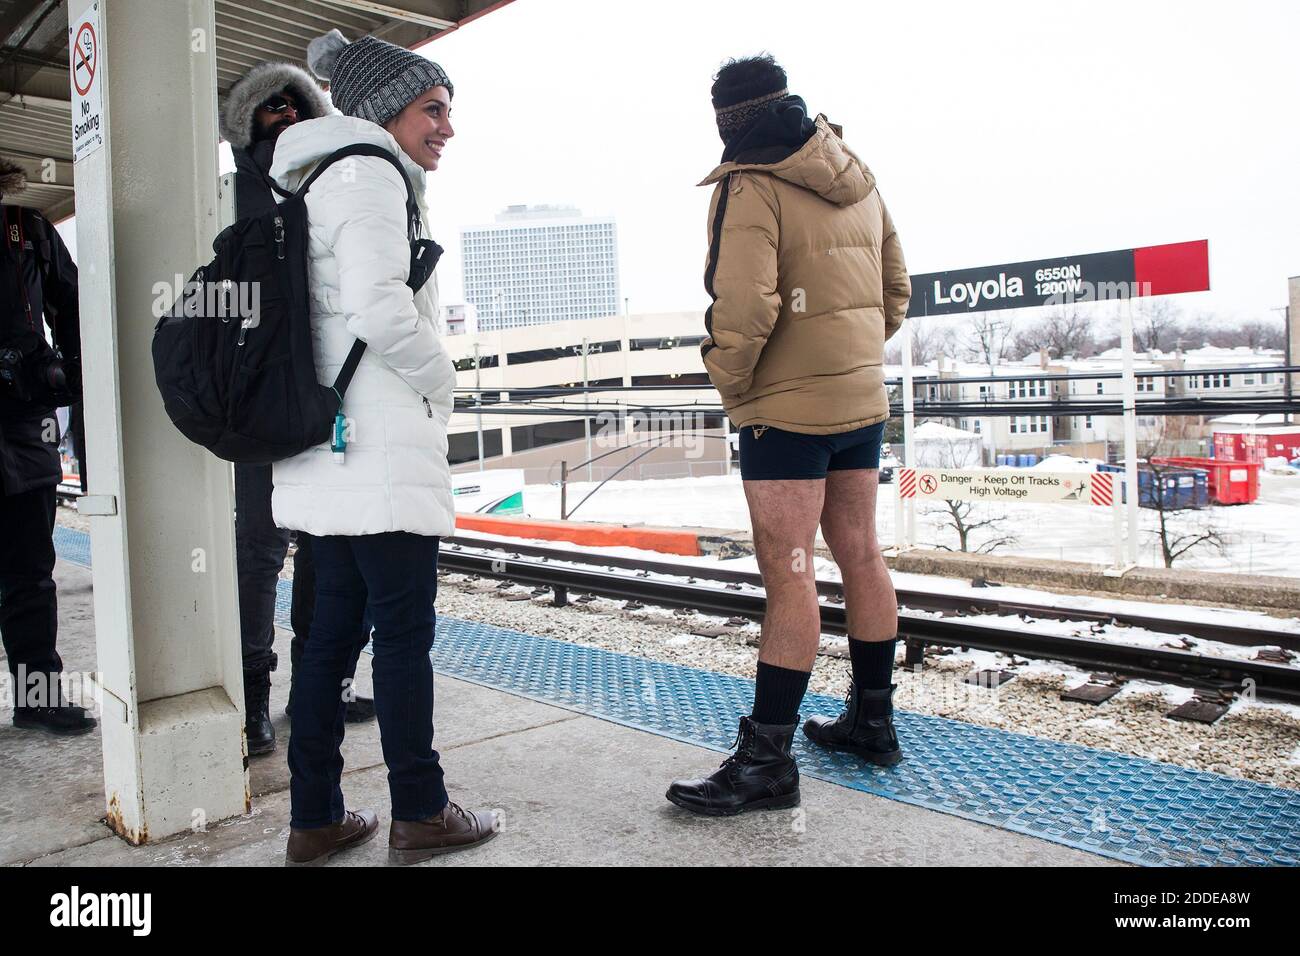 PAS DE FILM, PAS DE VIDÉO, PAS de TV, PAS DE DOCUMENTAIRE - UNE femme  sourit comme un homme se tient à proximité sans pantalon à la station  Loyola CTA Red Line